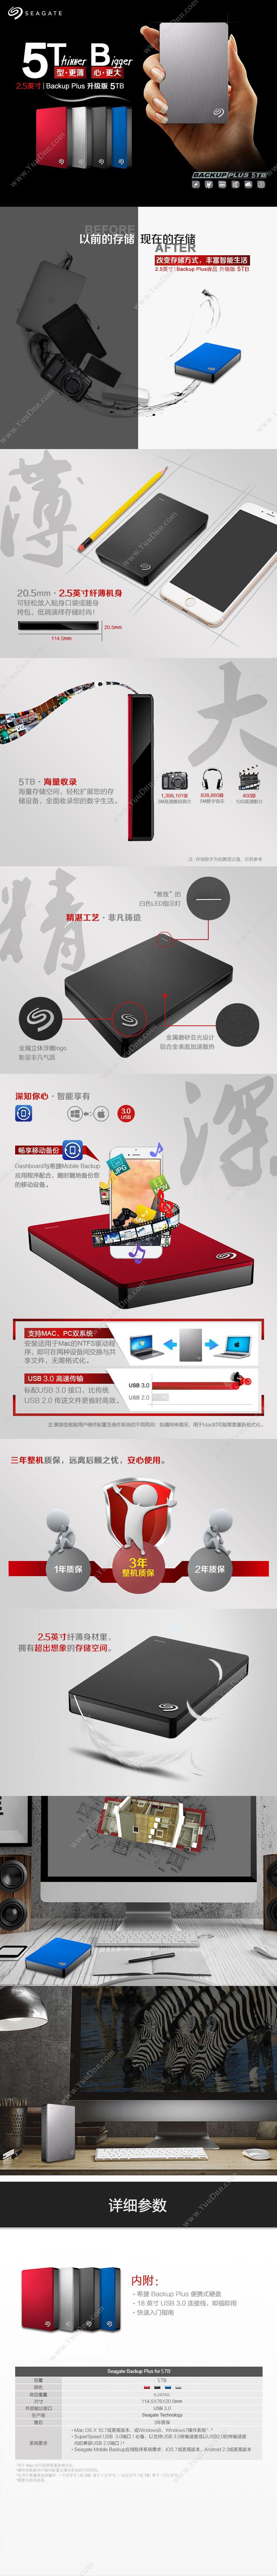 希捷 Seagate STDR5000301 Backup Plus睿品 USB3.0 2.5英寸  5TB 皓月银 移动硬盘